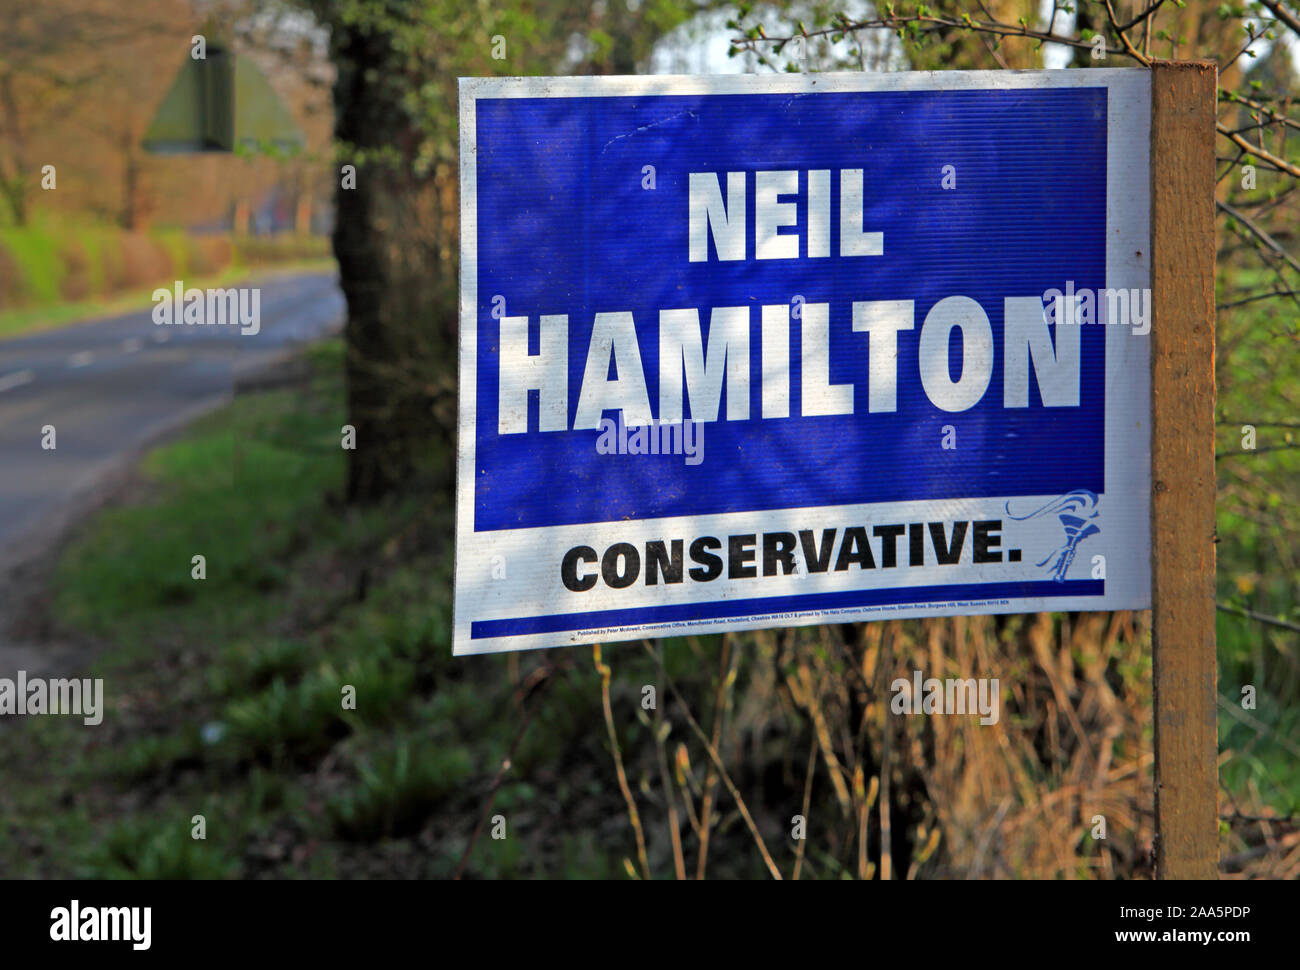 Neil Hamilton, vote signe conservateur, élection générale Knutsford Tatton Ward, Cheshire, nord-ouest de l'Angleterre, Royaume-Uni, le sleaze Tory, mensonges et grifpage Banque D'Images